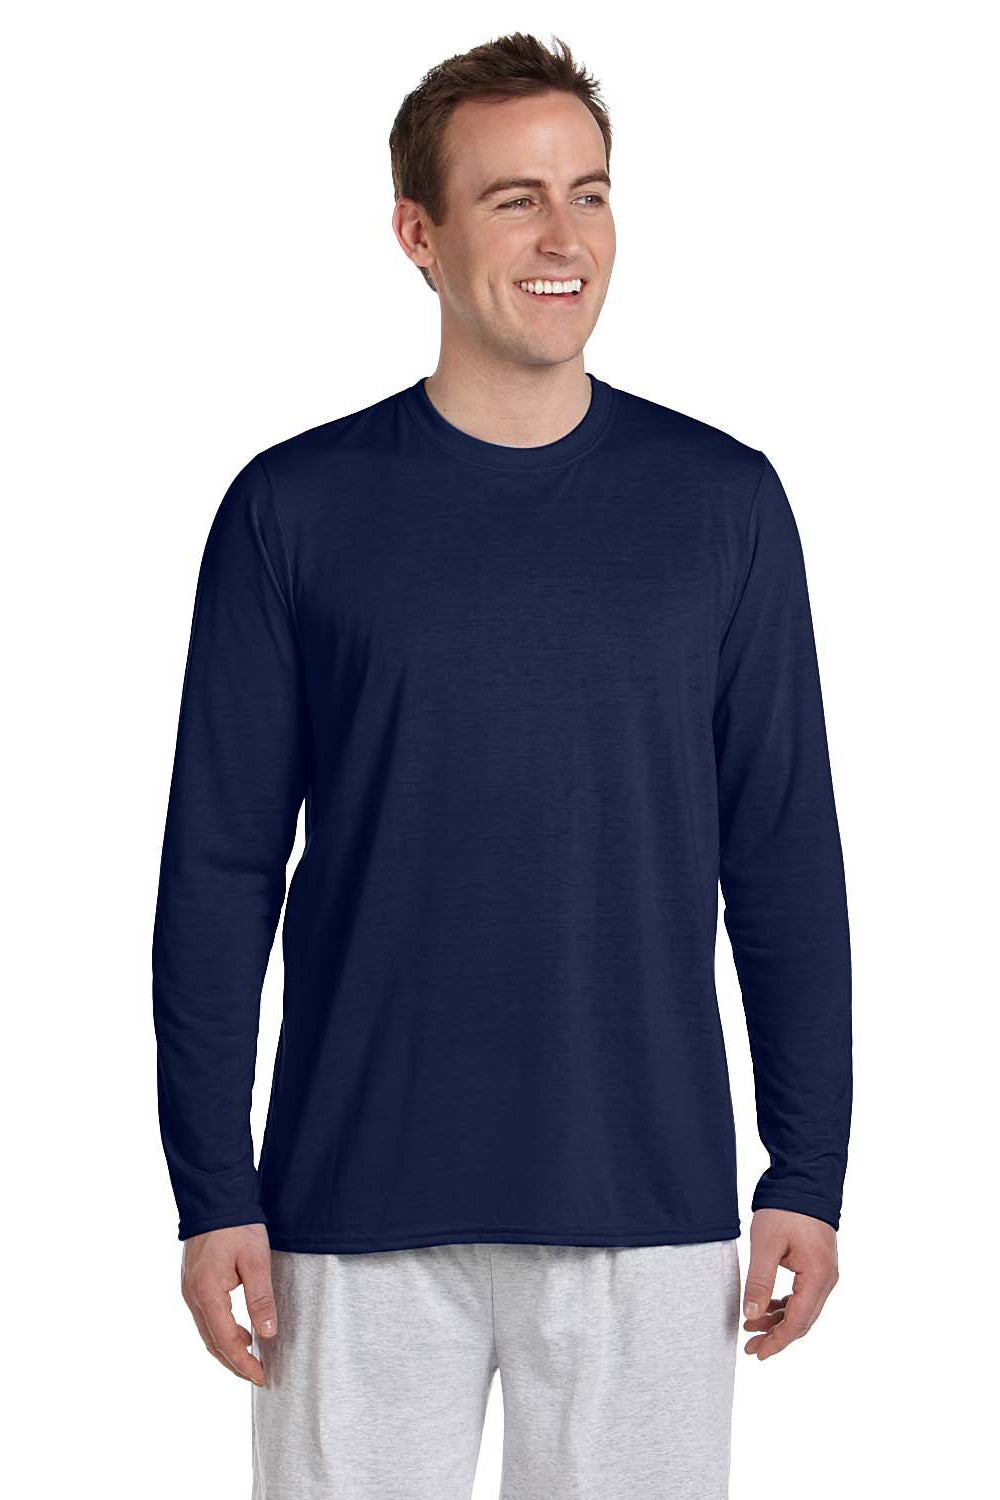 Gildan G424 Mens Performance Jersey Moisture Wicking Long Sleeve Crewneck T-Shirt Navy Blue Front